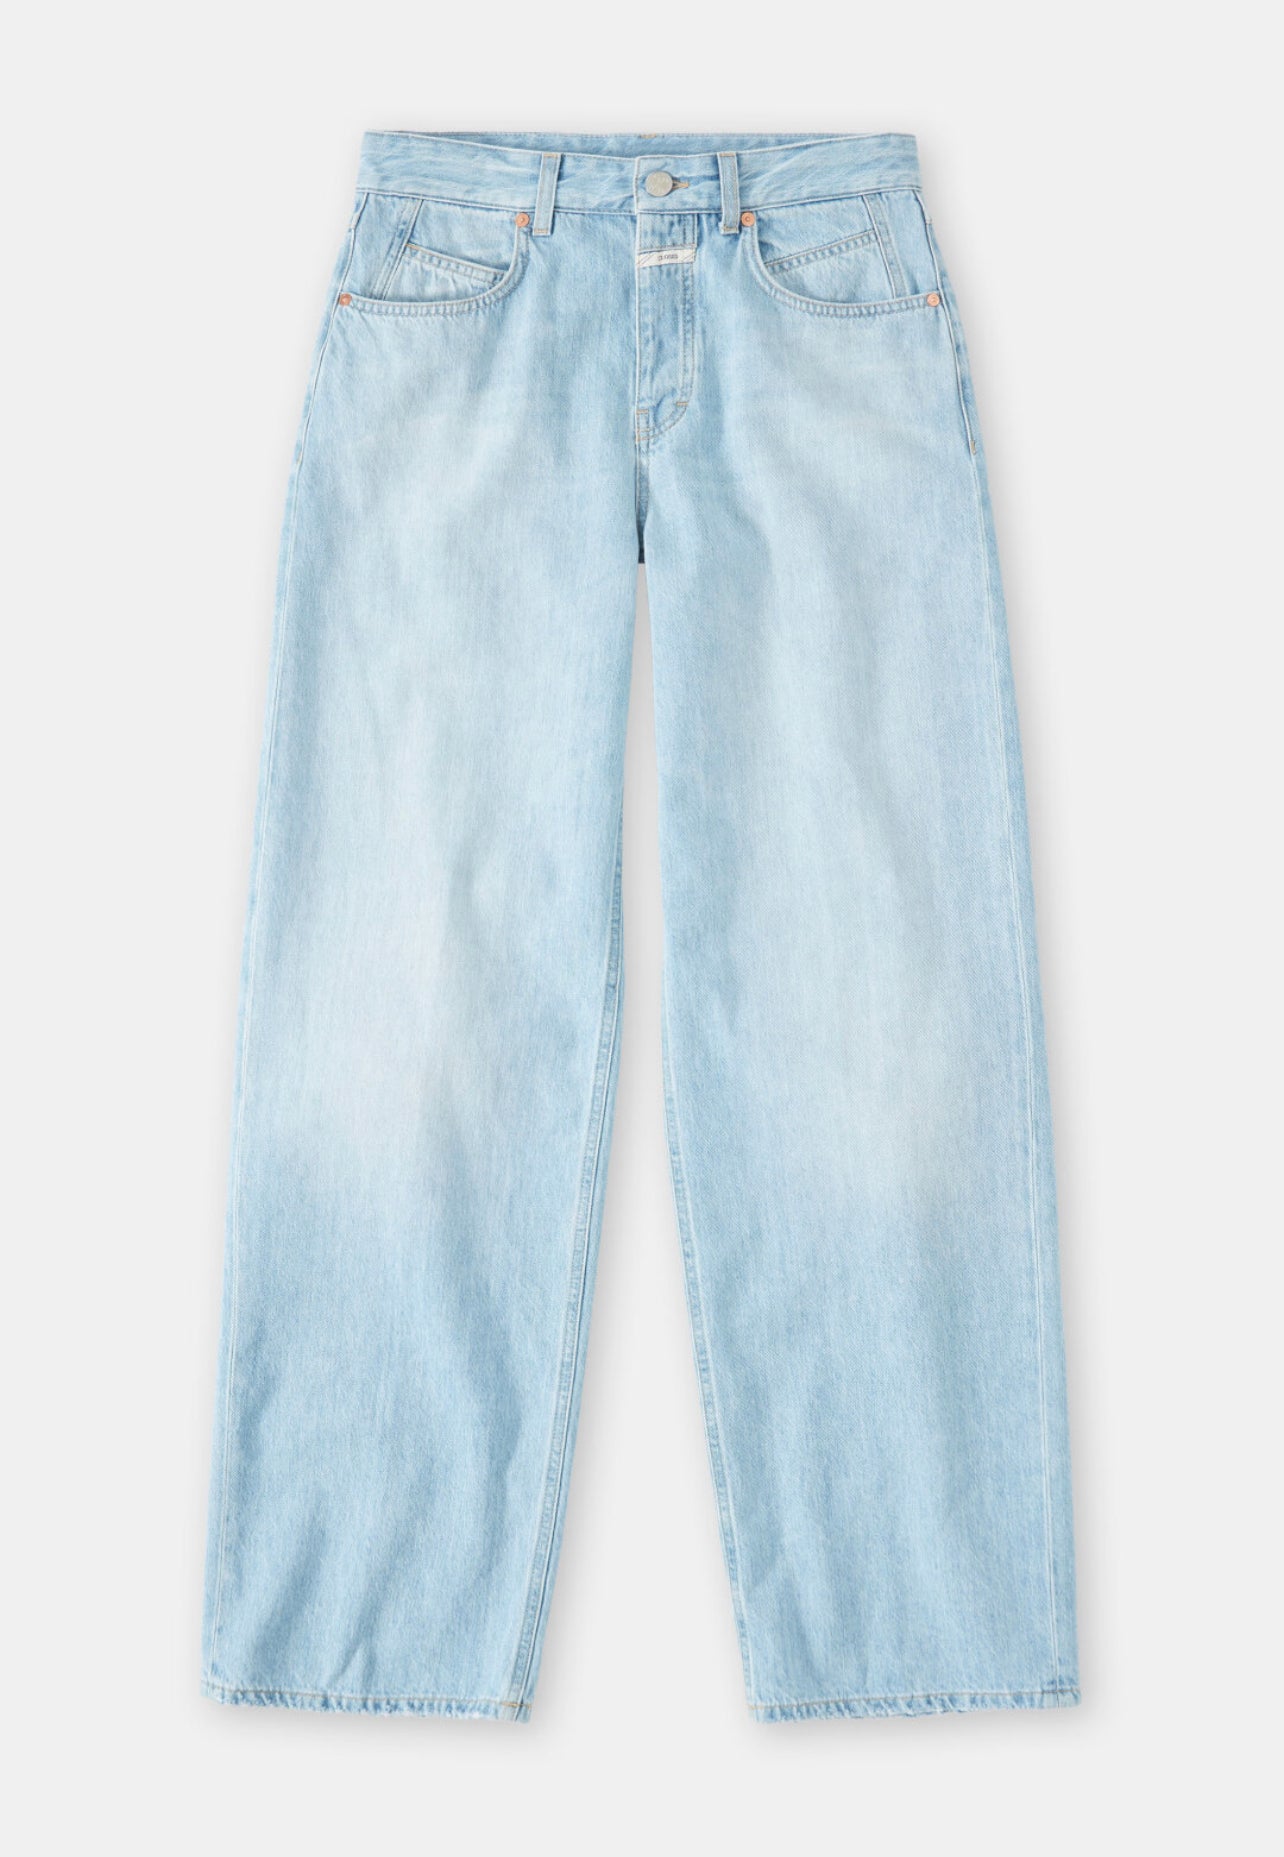 Nikka Jeans 1